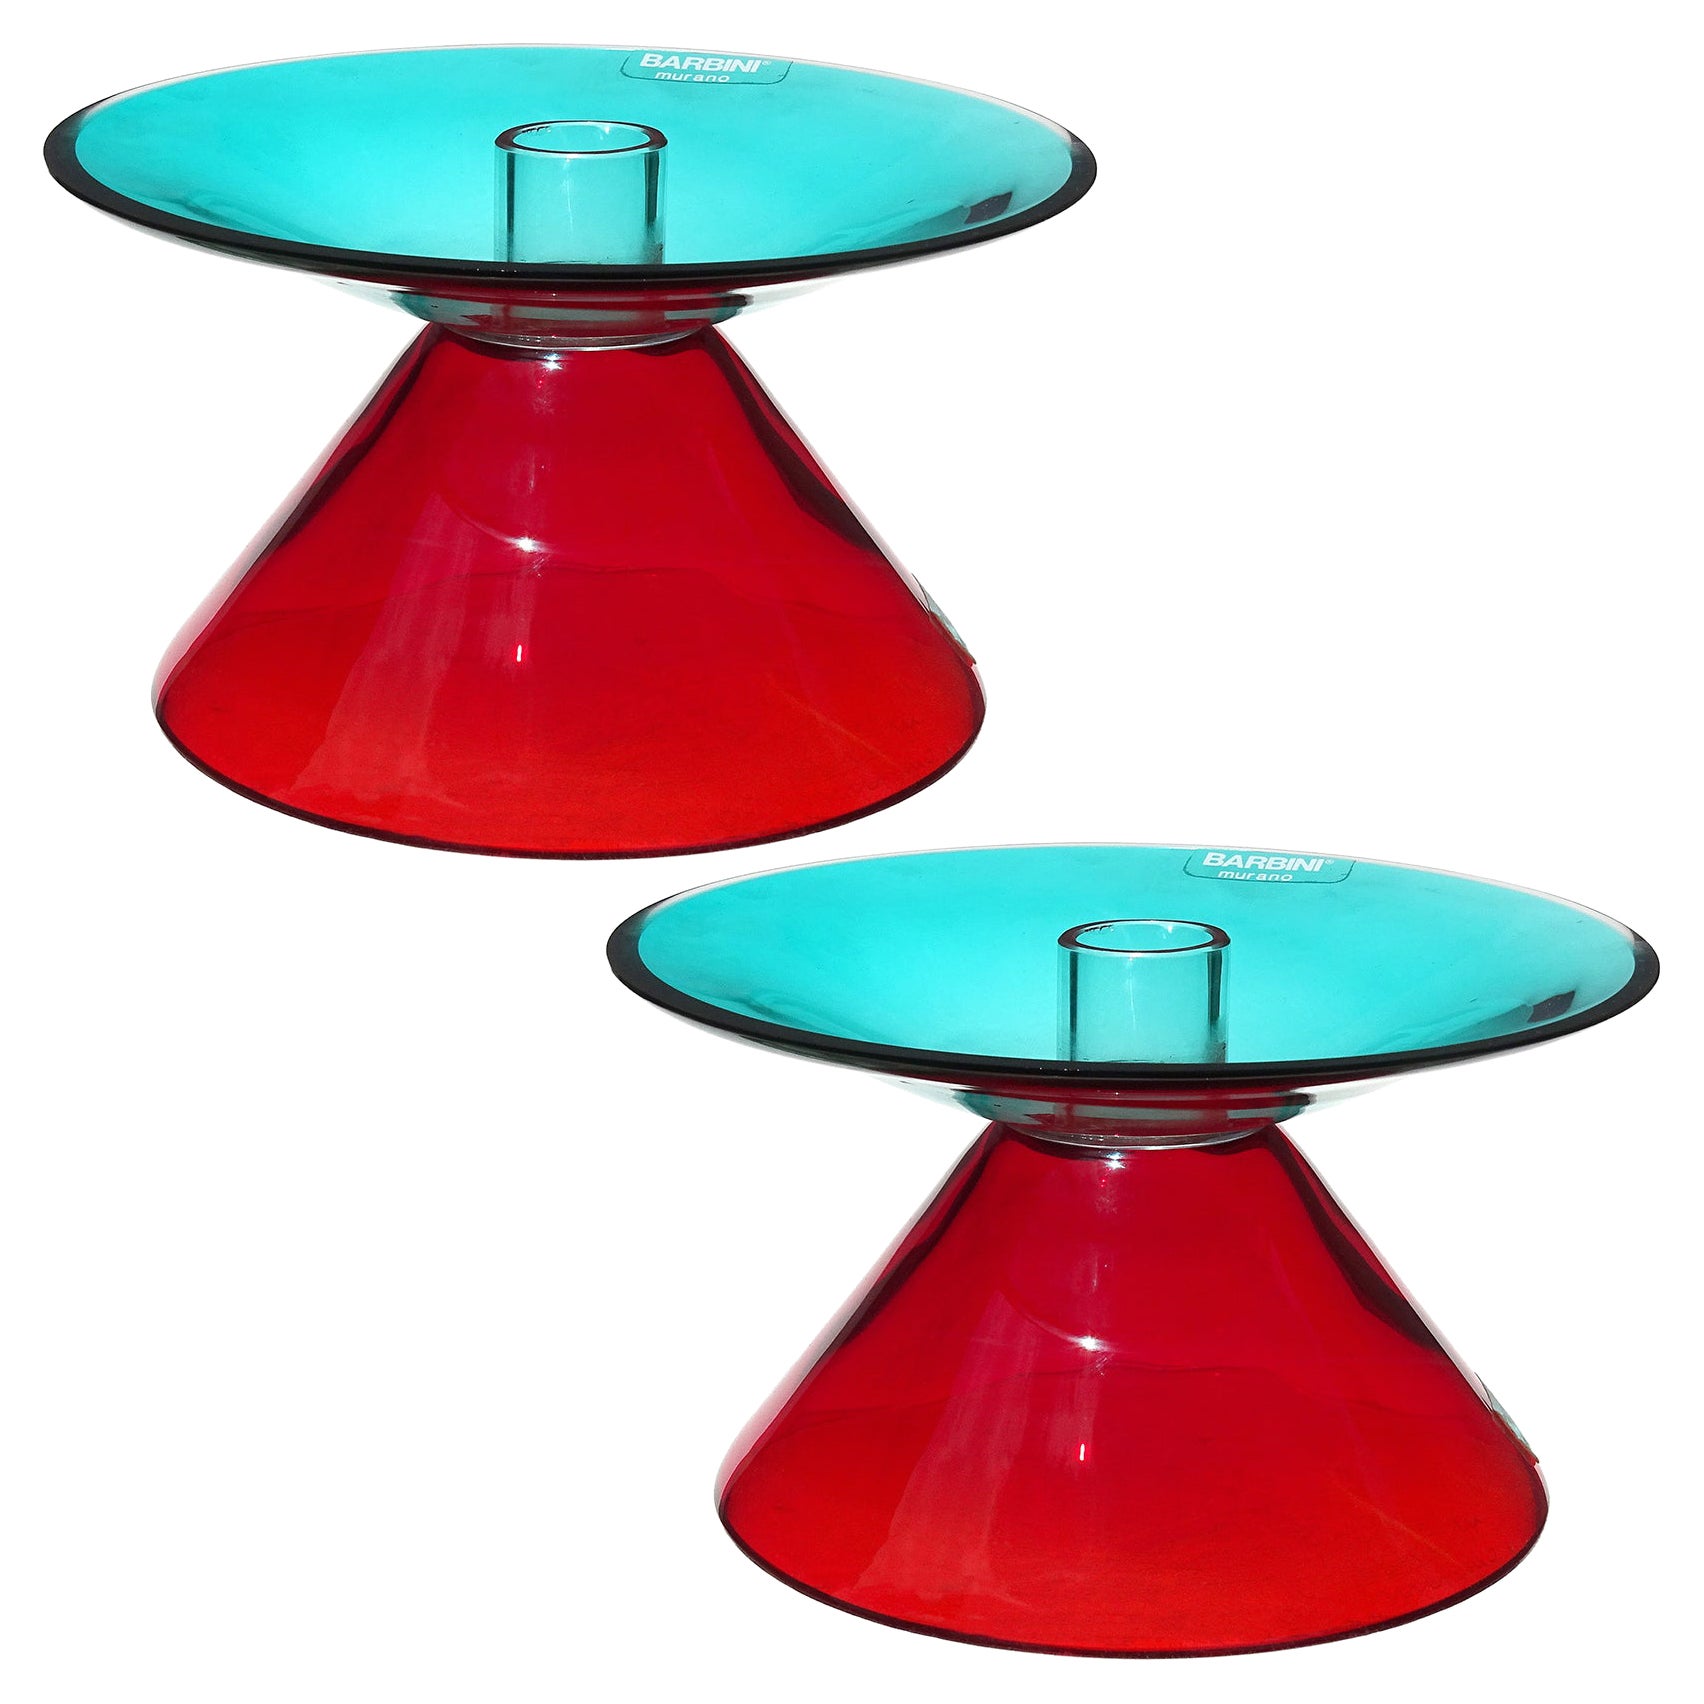 Porte-bougies en verre d'art italien de Murano rouge turquoise caractéristique de Barbini